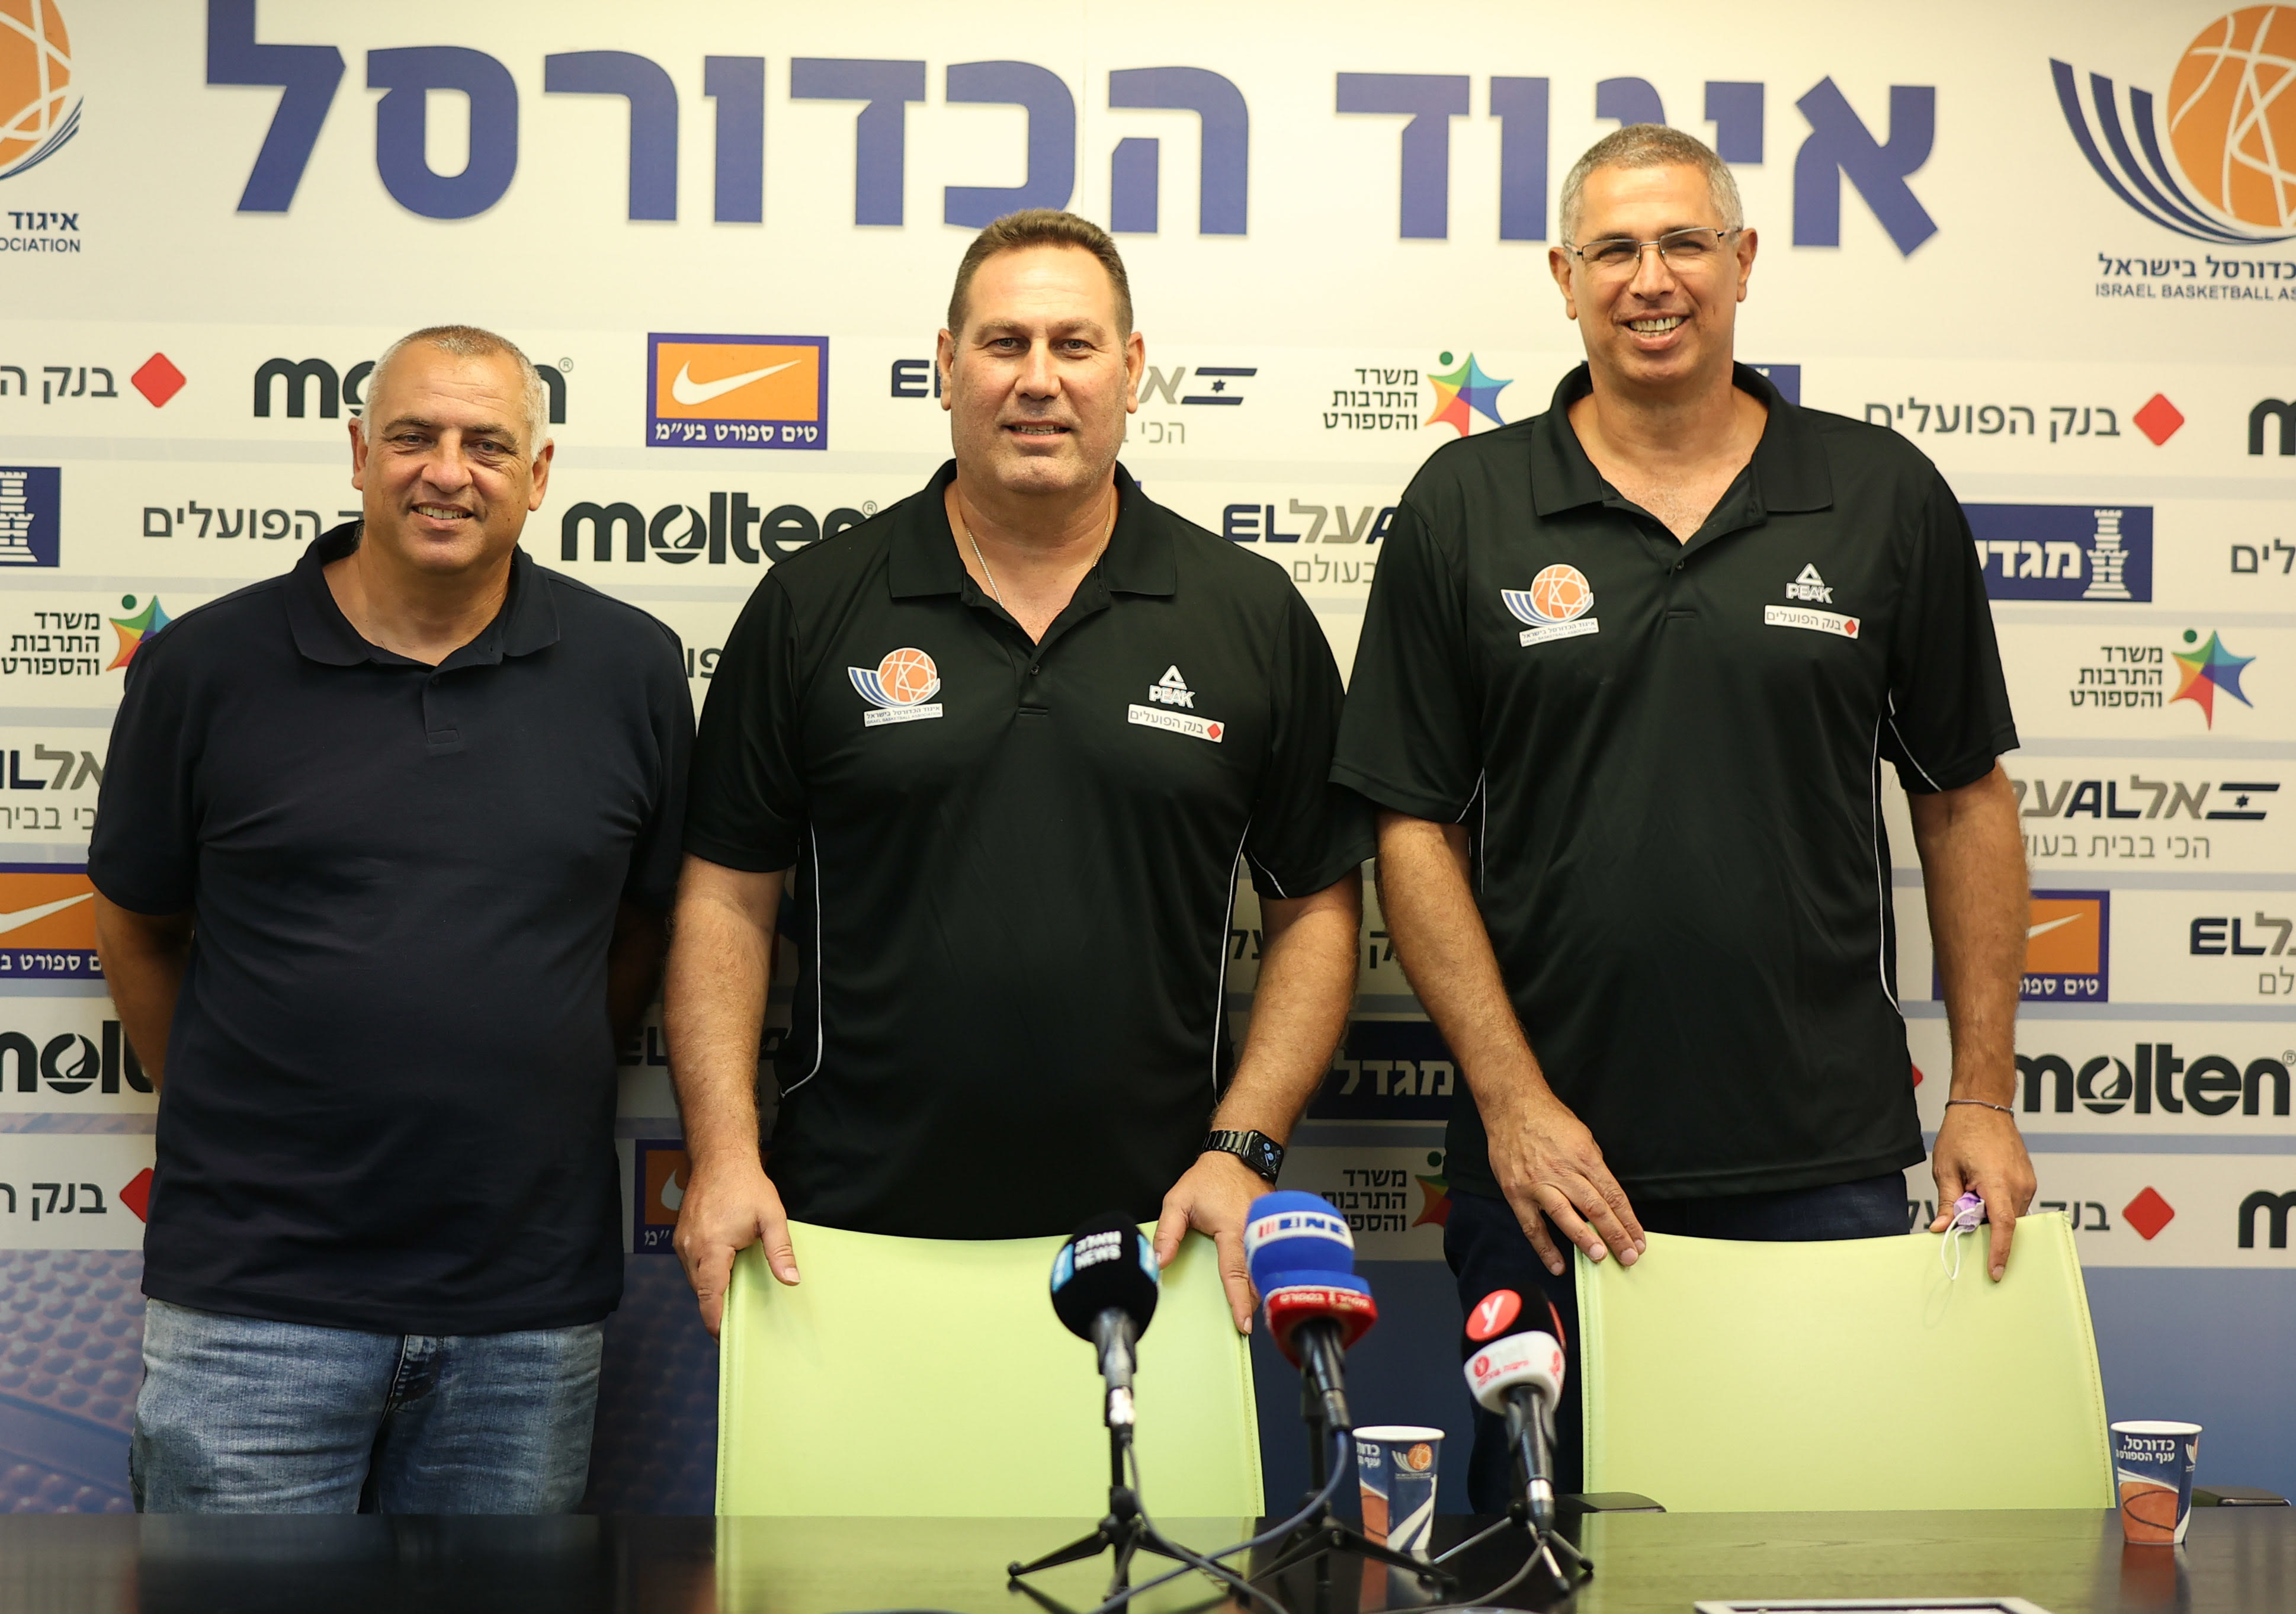 גיא גודס מאמן נבחרת ישראל עם עמוס פרישמן, מוטי דניאל